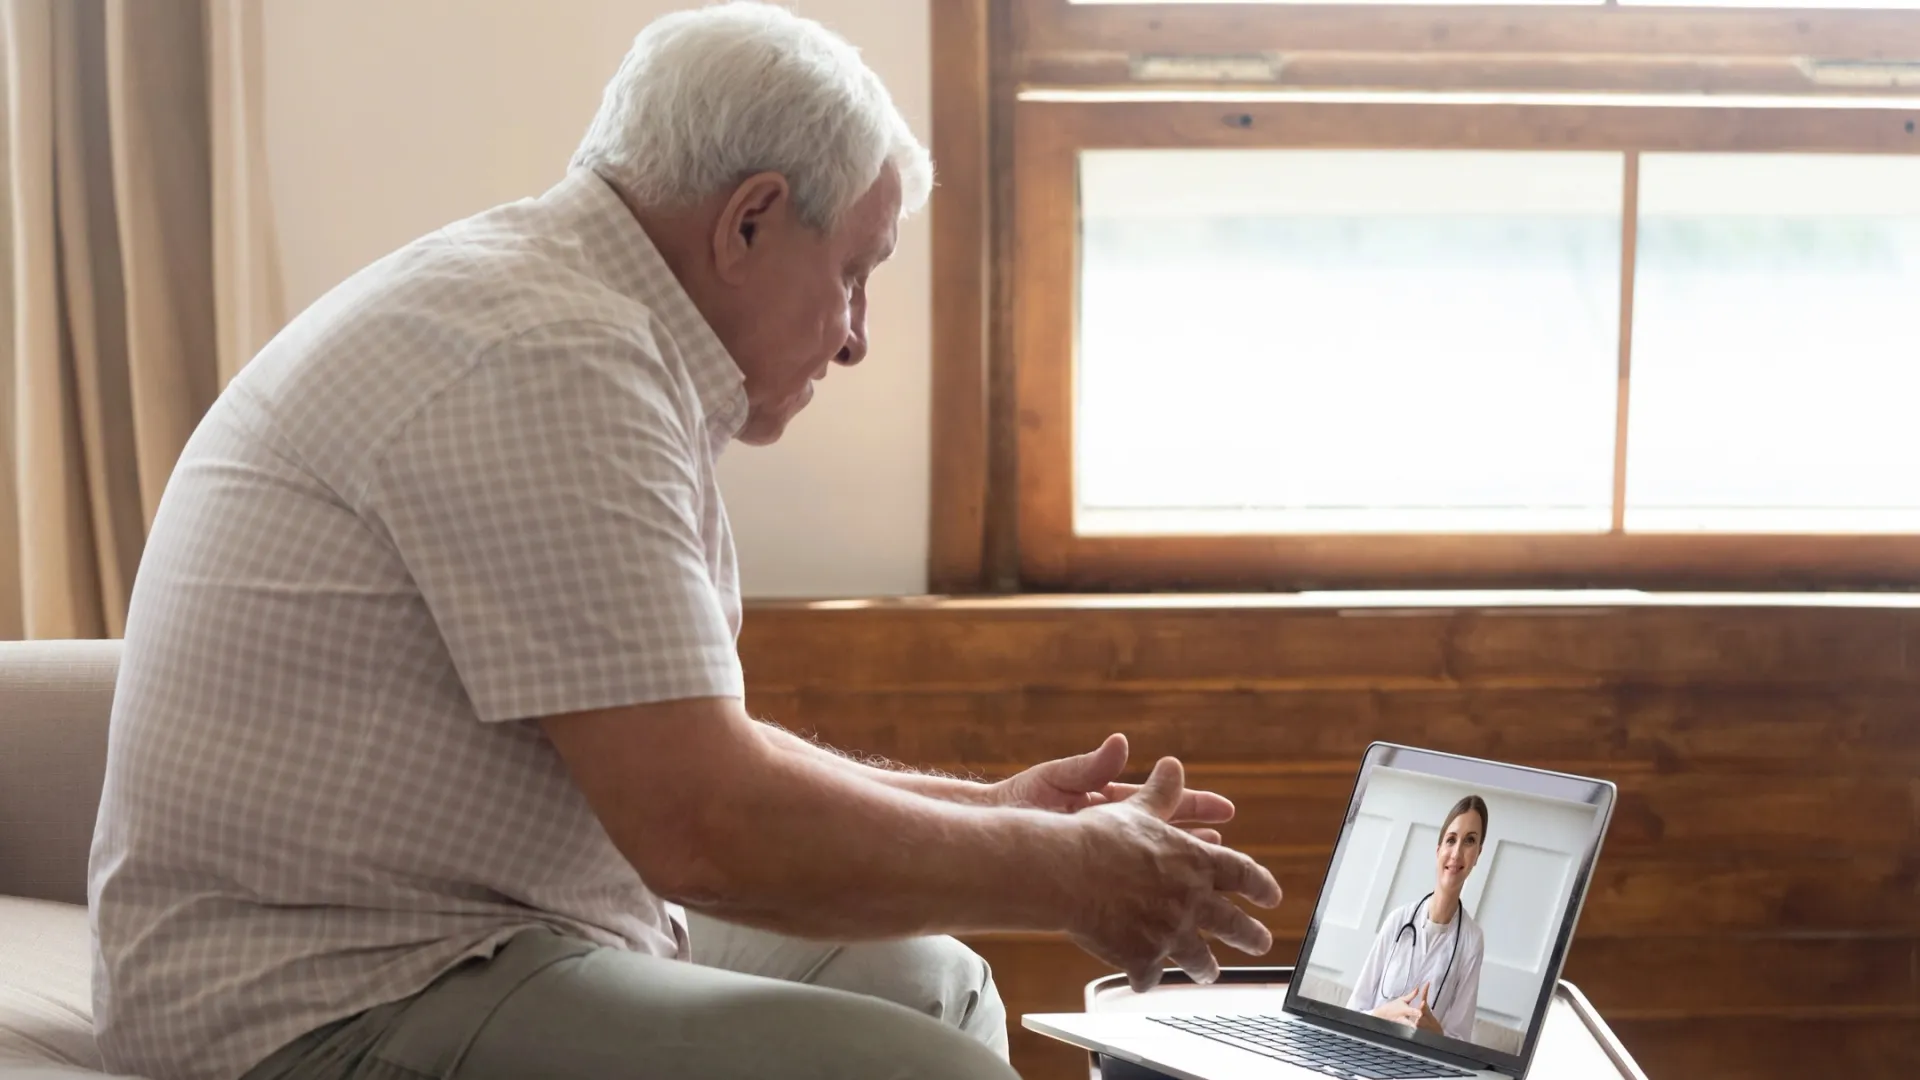 Онлайн-прием пациентов готовы проводить восемь врачей. Фото: fizkes / Shutterstock / Fotodom